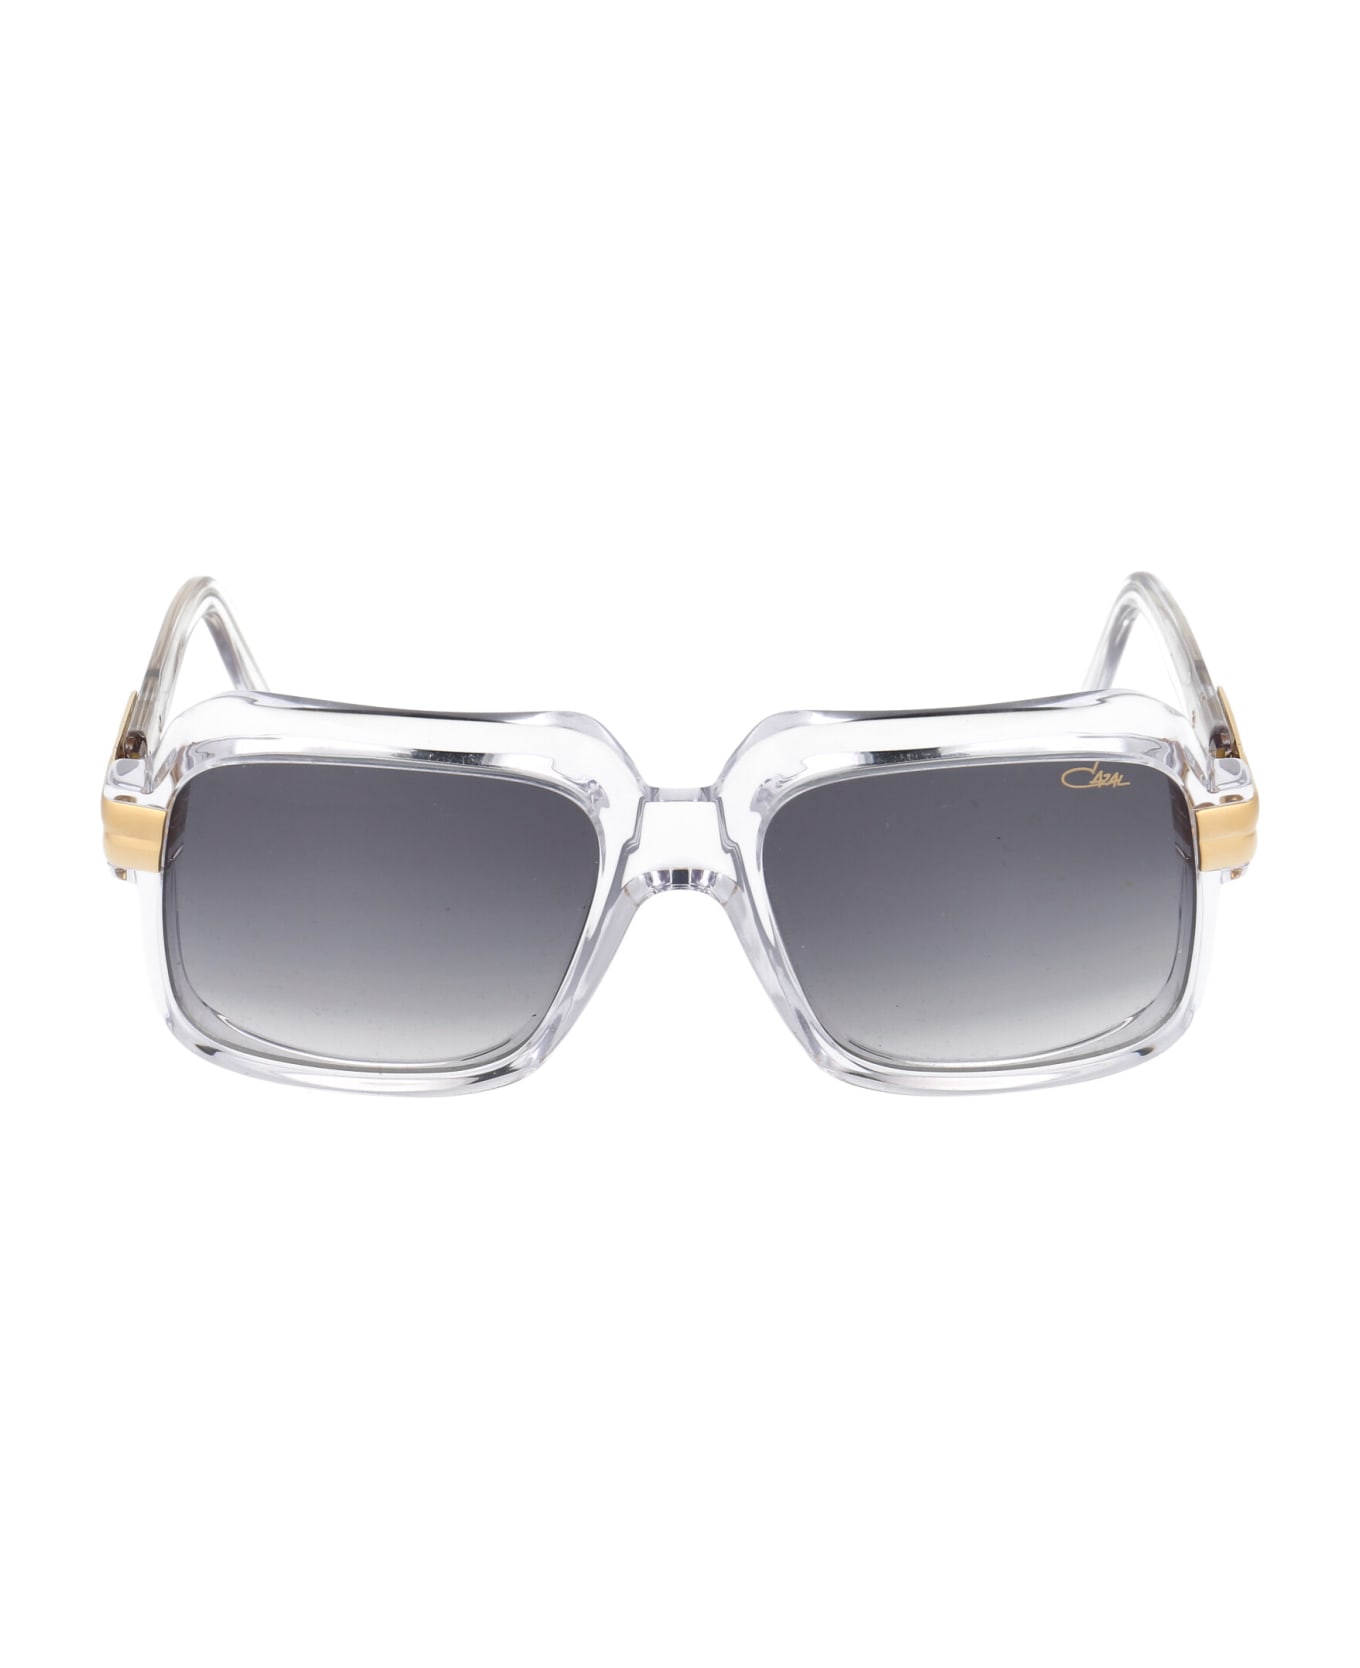 Cazal Mod. 607/3 Sunglasses - 065 CRYSTAL